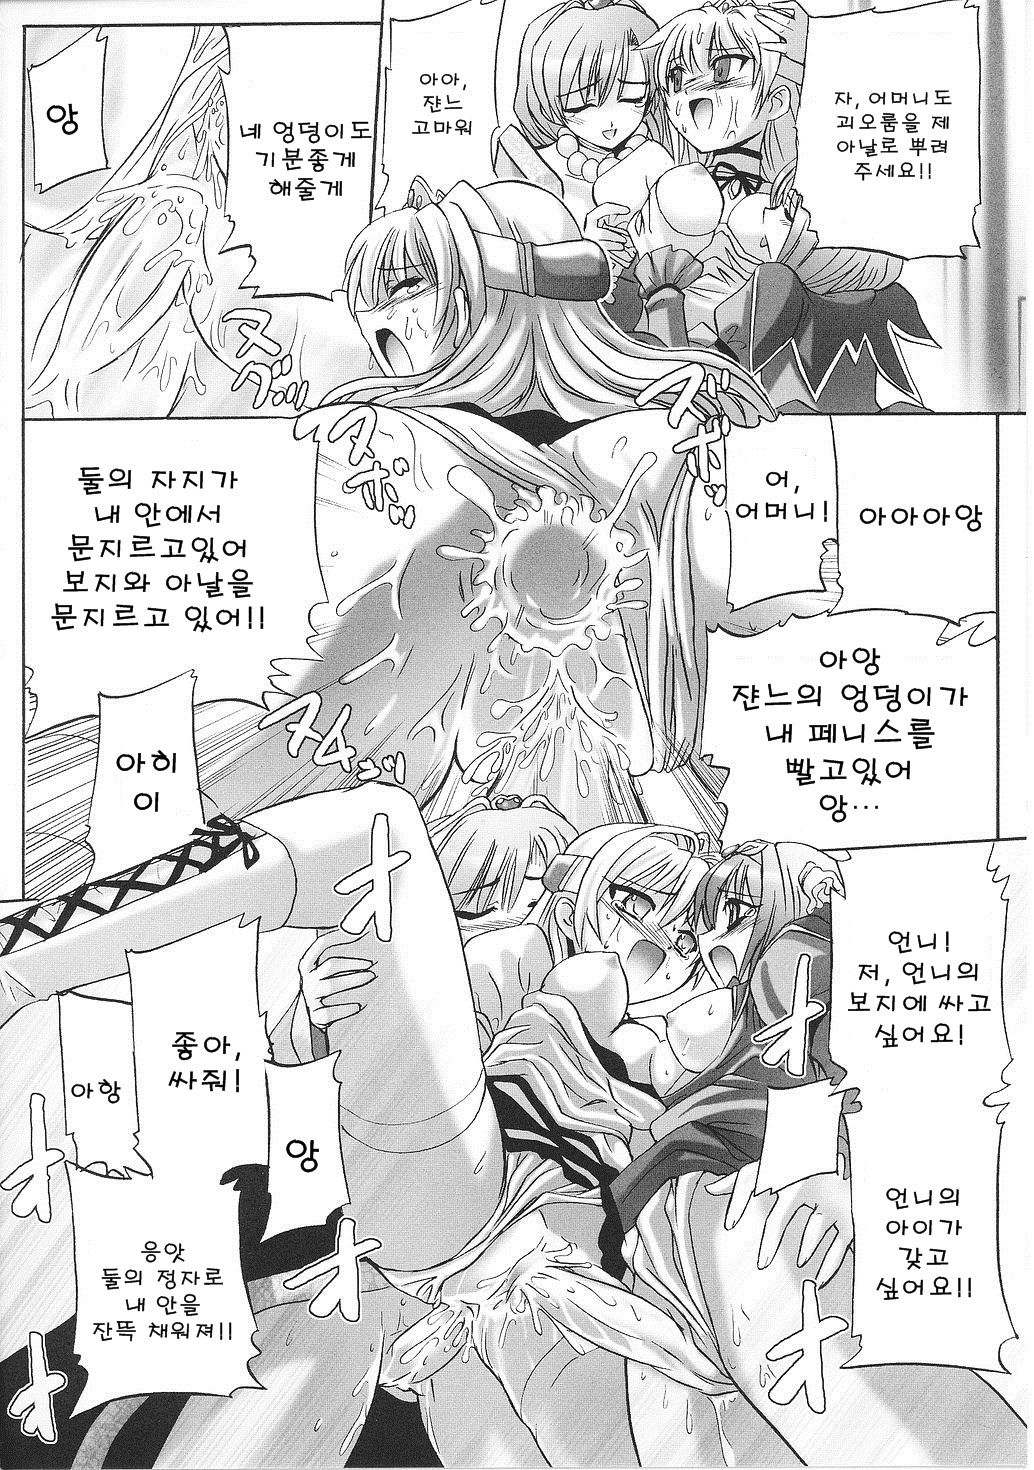 Immoral princess knight 05 (korean) 不道徳な姫騎士 05 (韓国語)